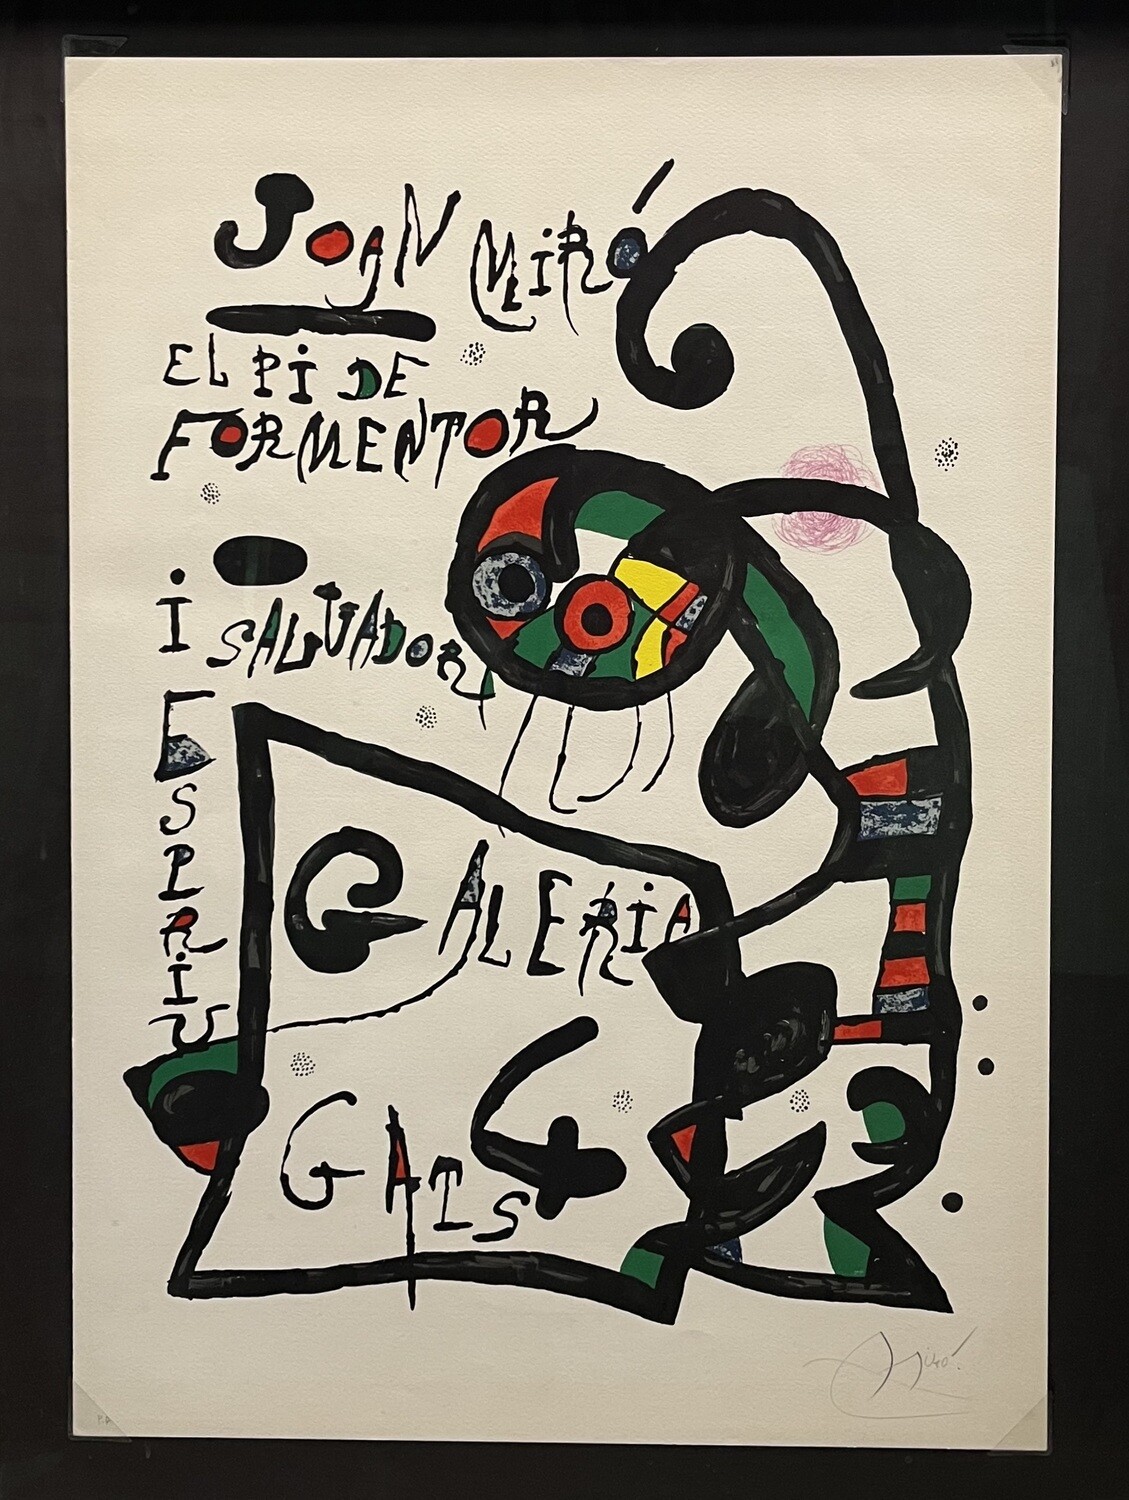 Joan Miro "El Pi de Formentor"